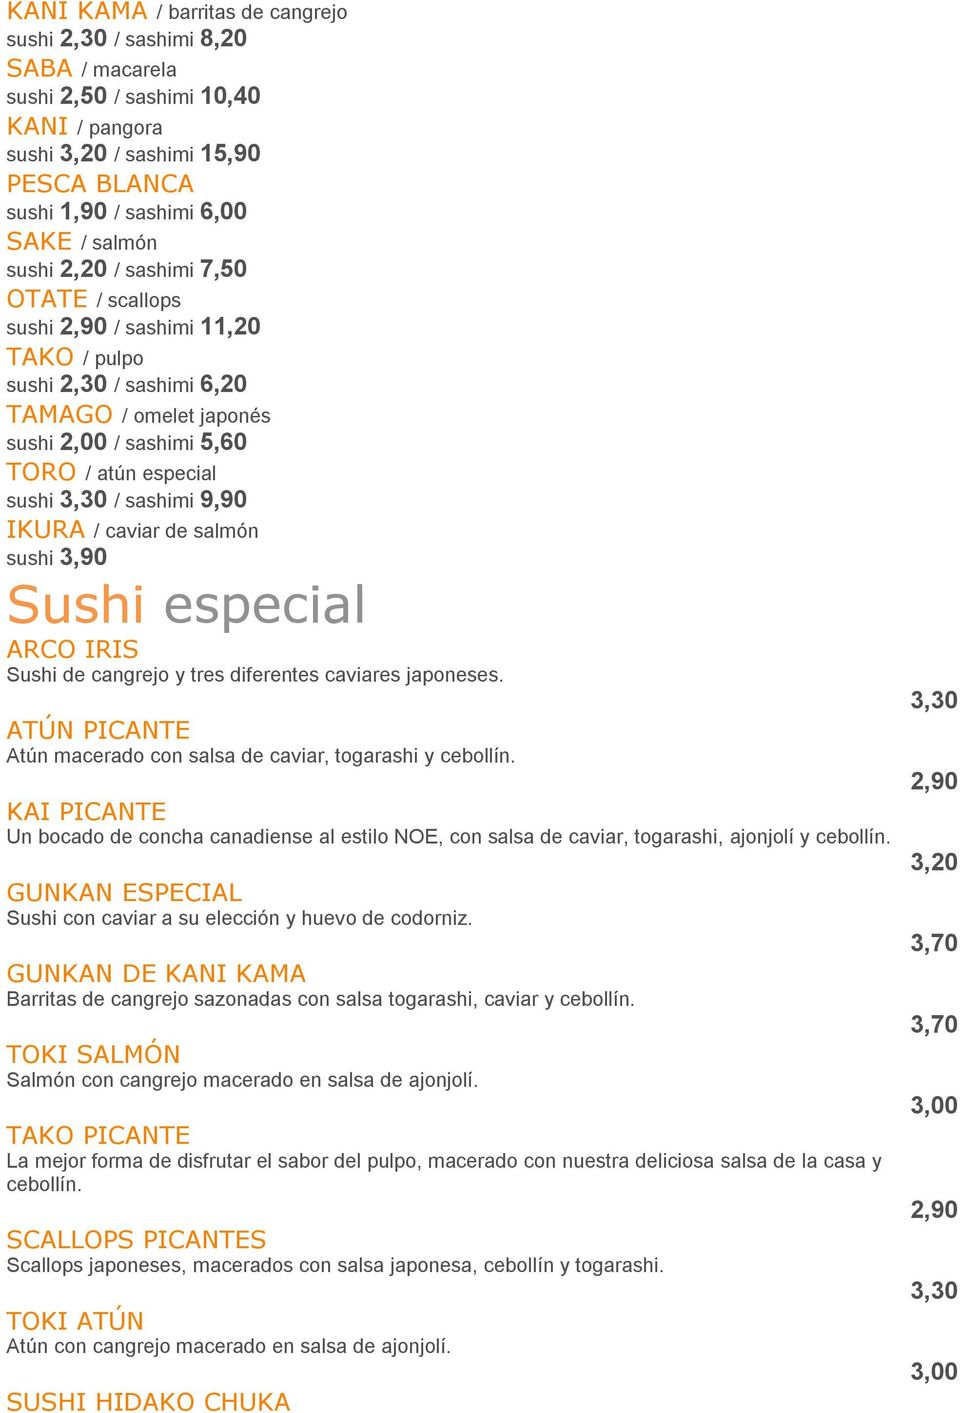 sashimi 9,90 IKURA / caviar de salmón sushi 3,90 Sushi especial ARCO IRIS Sushi de cangrejo y tres diferentes caviares japoneses. ATÚN PICANTE Atún macerado con salsa de caviar, togarashi y cebollín.